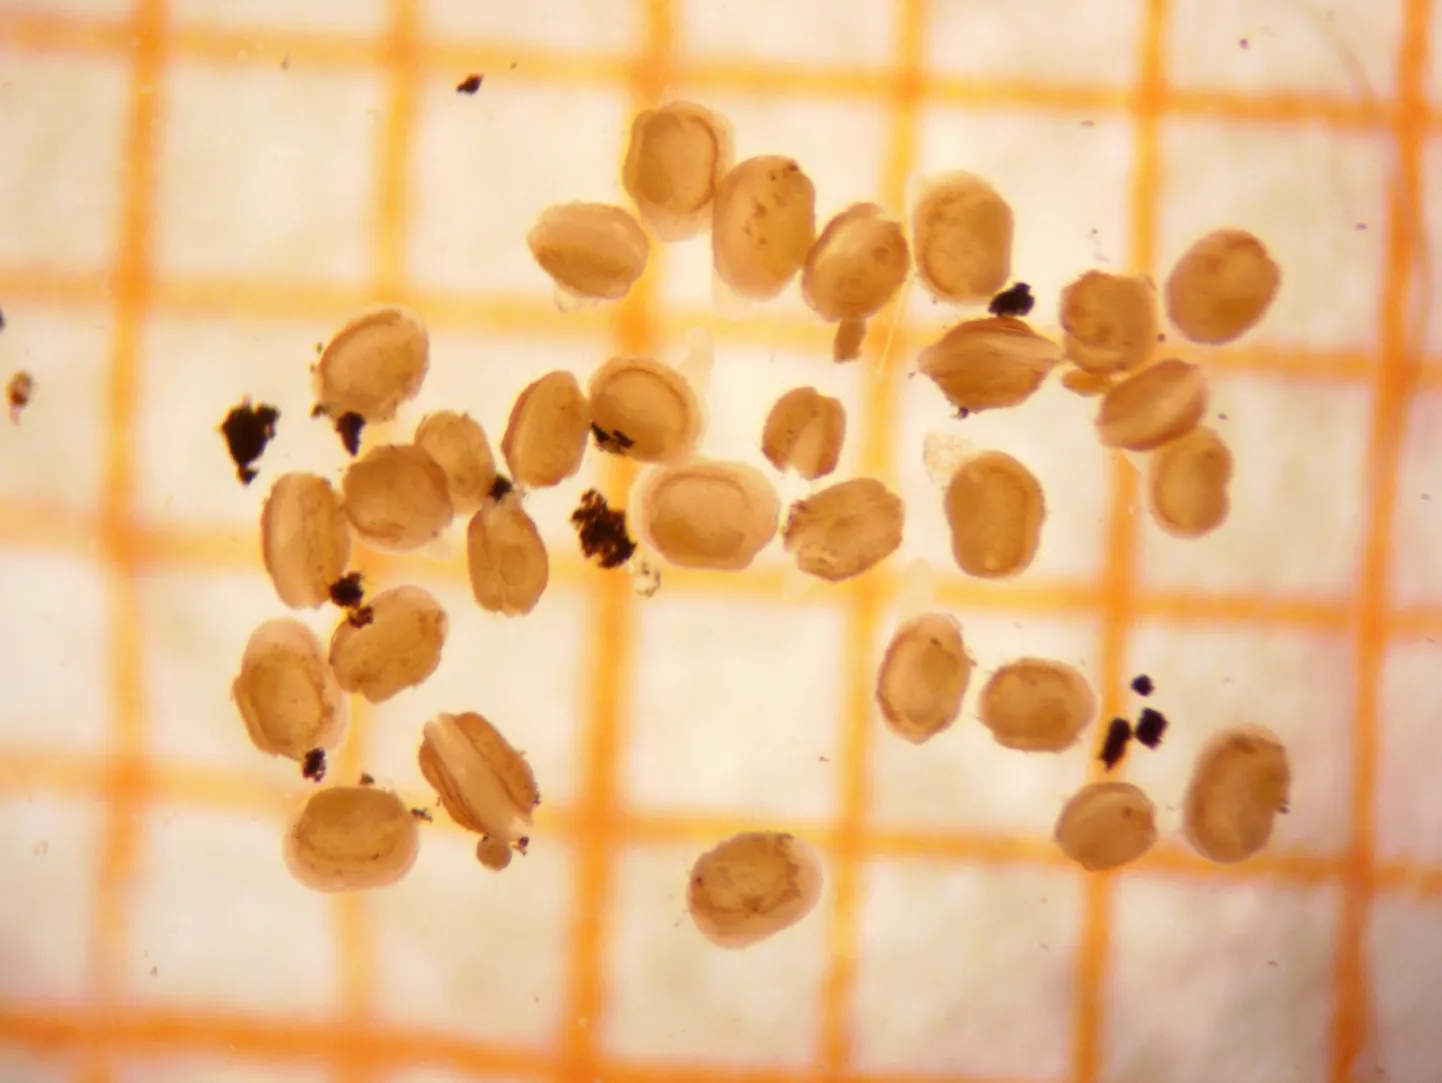 Väikesi ebapärlikarpe saab täpsemalt silmitseda ainult mikroskoobi all, nende suurusele annab õige mõõtme taustaks lisatud millimeeterpaber.